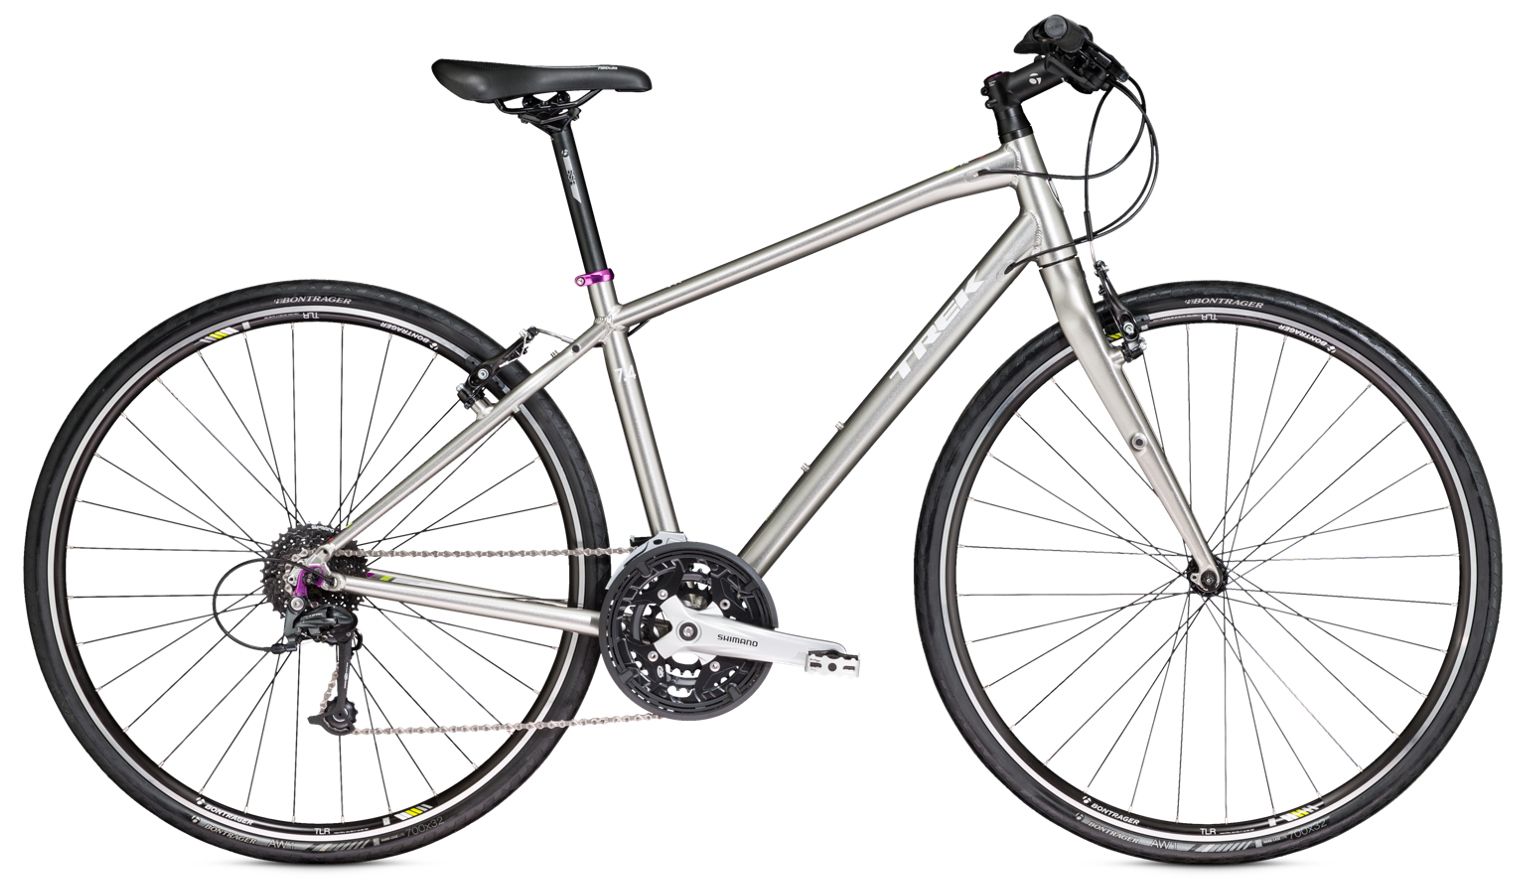  Отзывы о Женском велосипеде Trek 7.4 FX WSD 2016